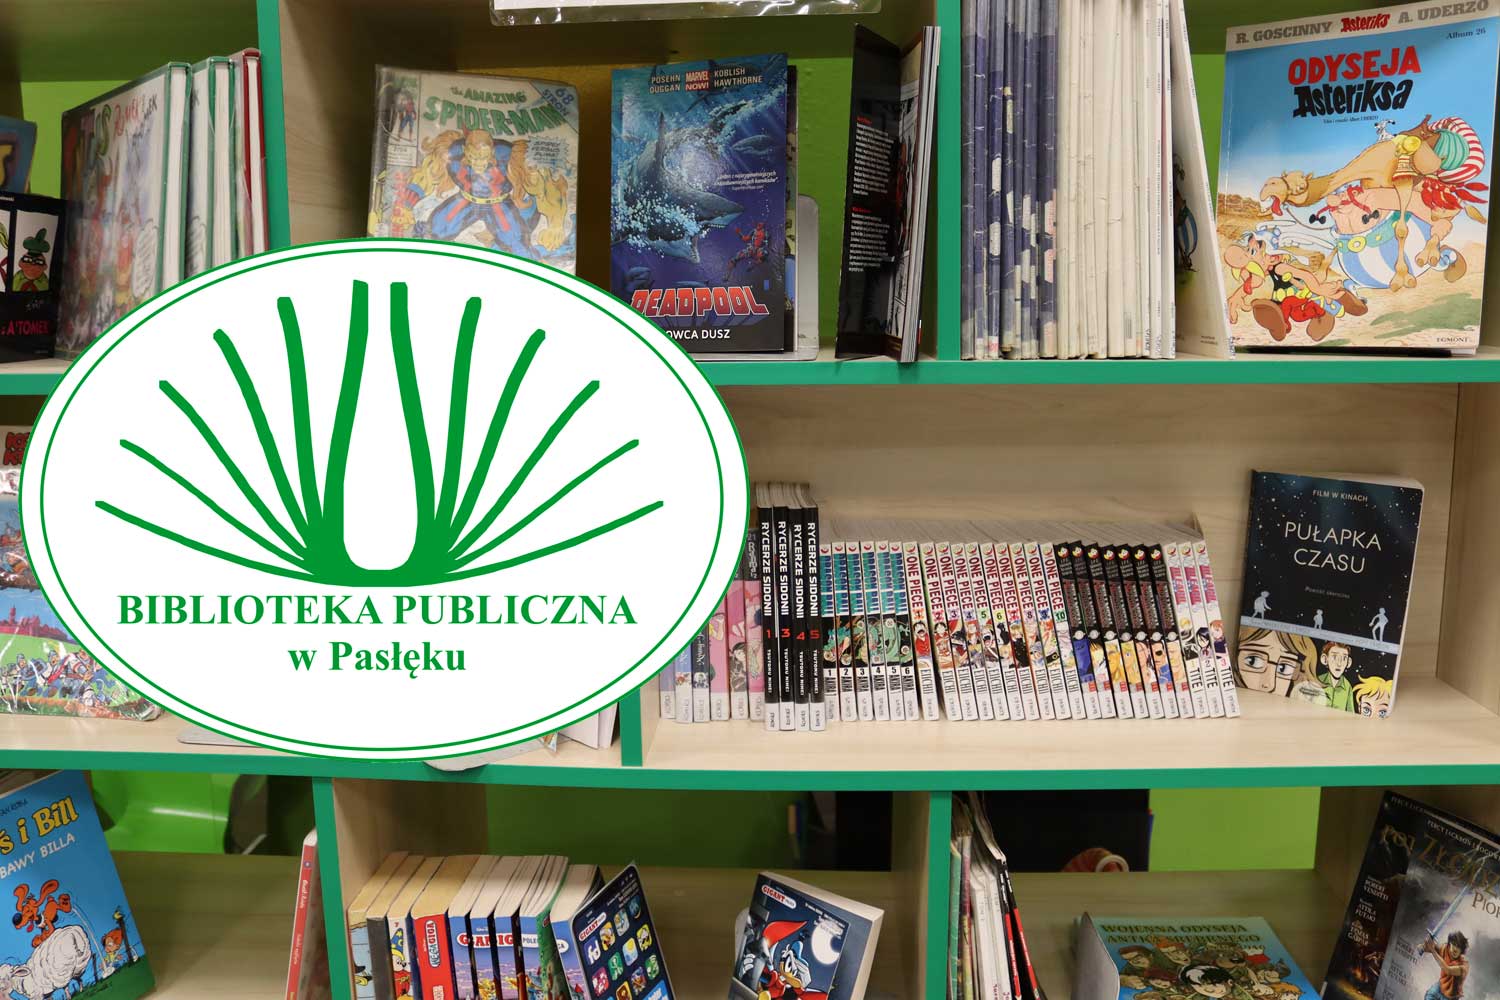  Zdjęcie przedstawiające półki z komiksami na tle którgo widnieje logotyp Biblioteki Publicznej w Pasłęku 